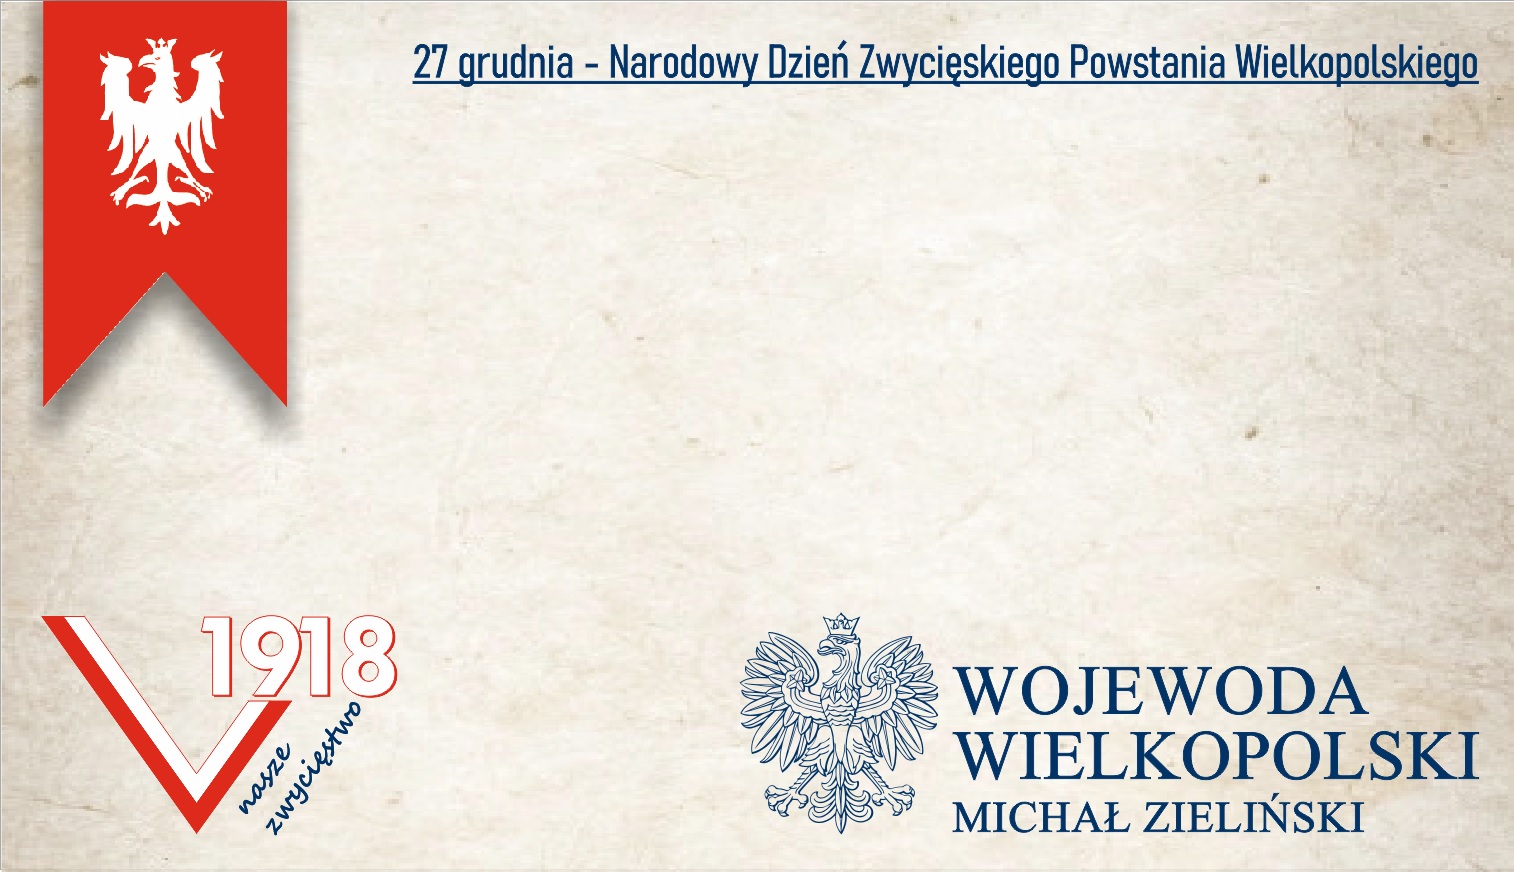 27 grudnia - Narodowy Dzień Zwycięskiego Powstania Wielkopolskiego